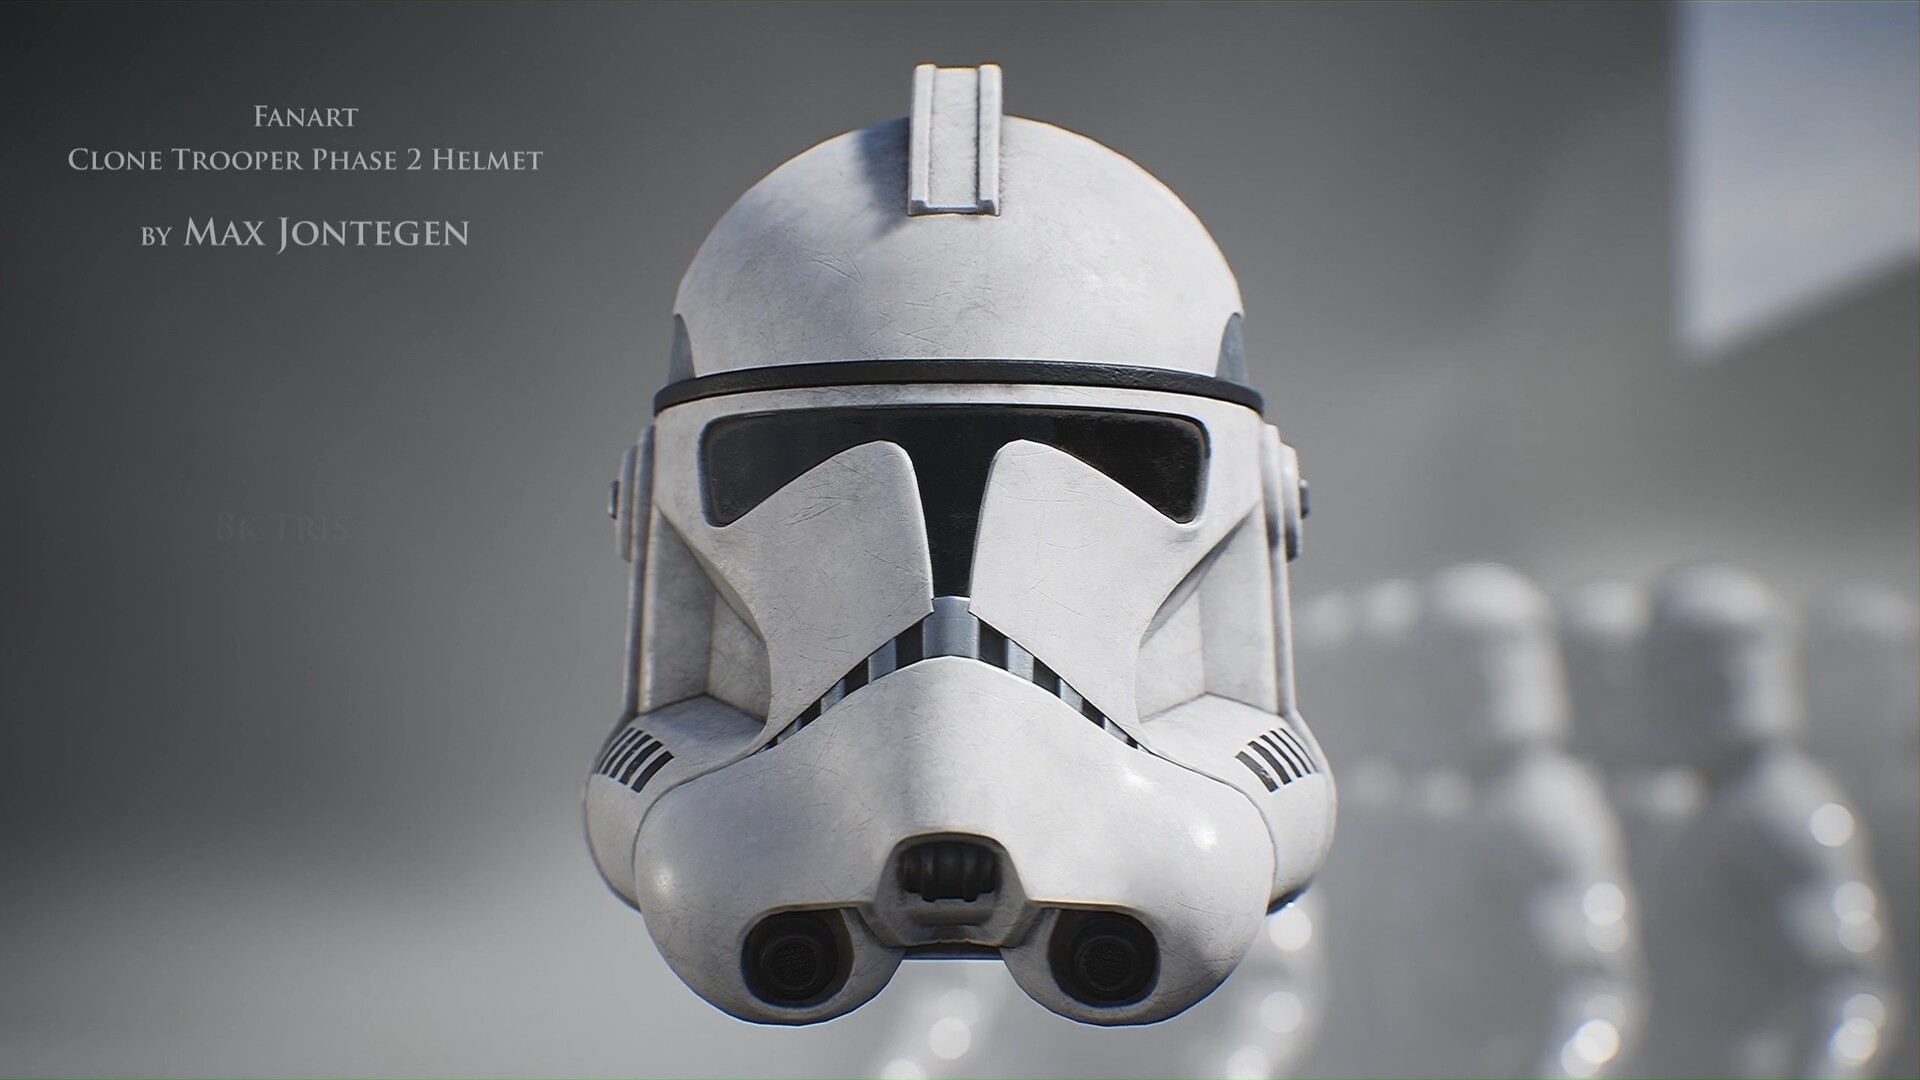 Clone Trooper Phase 2 Helmet - Fanart, Max Jontegen.